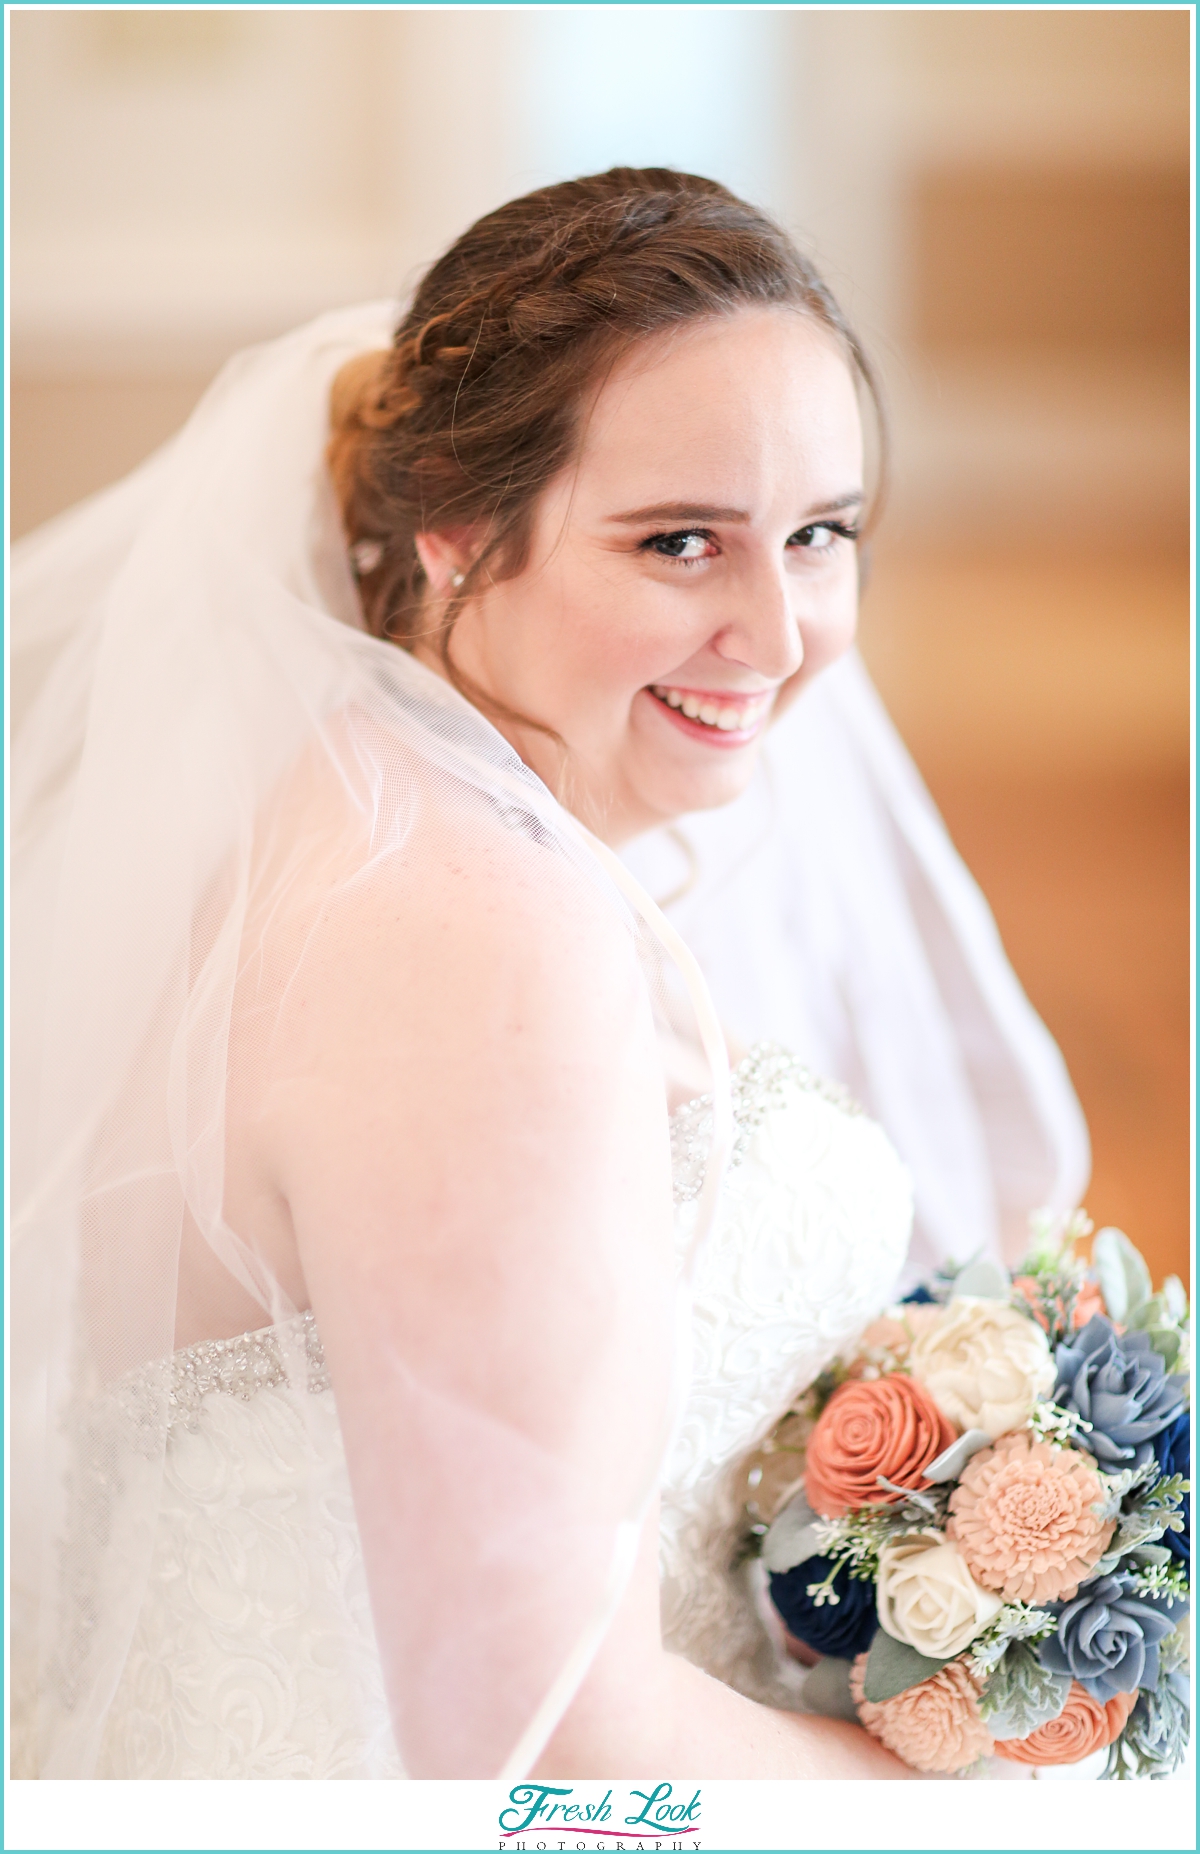 fun bride with big smile